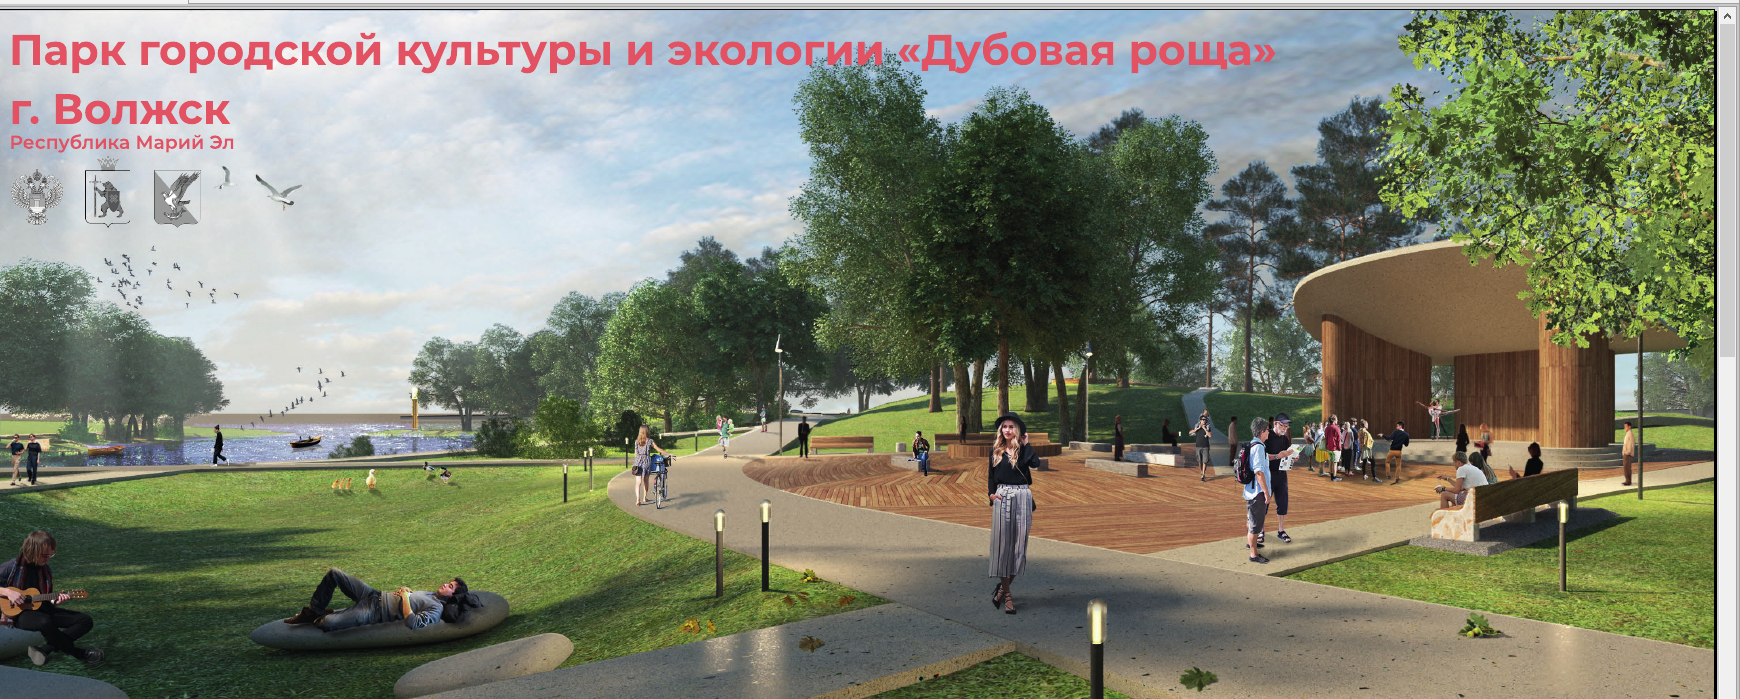 В одном из городов Марий Эл постоят парк за 123 миллиона рублей